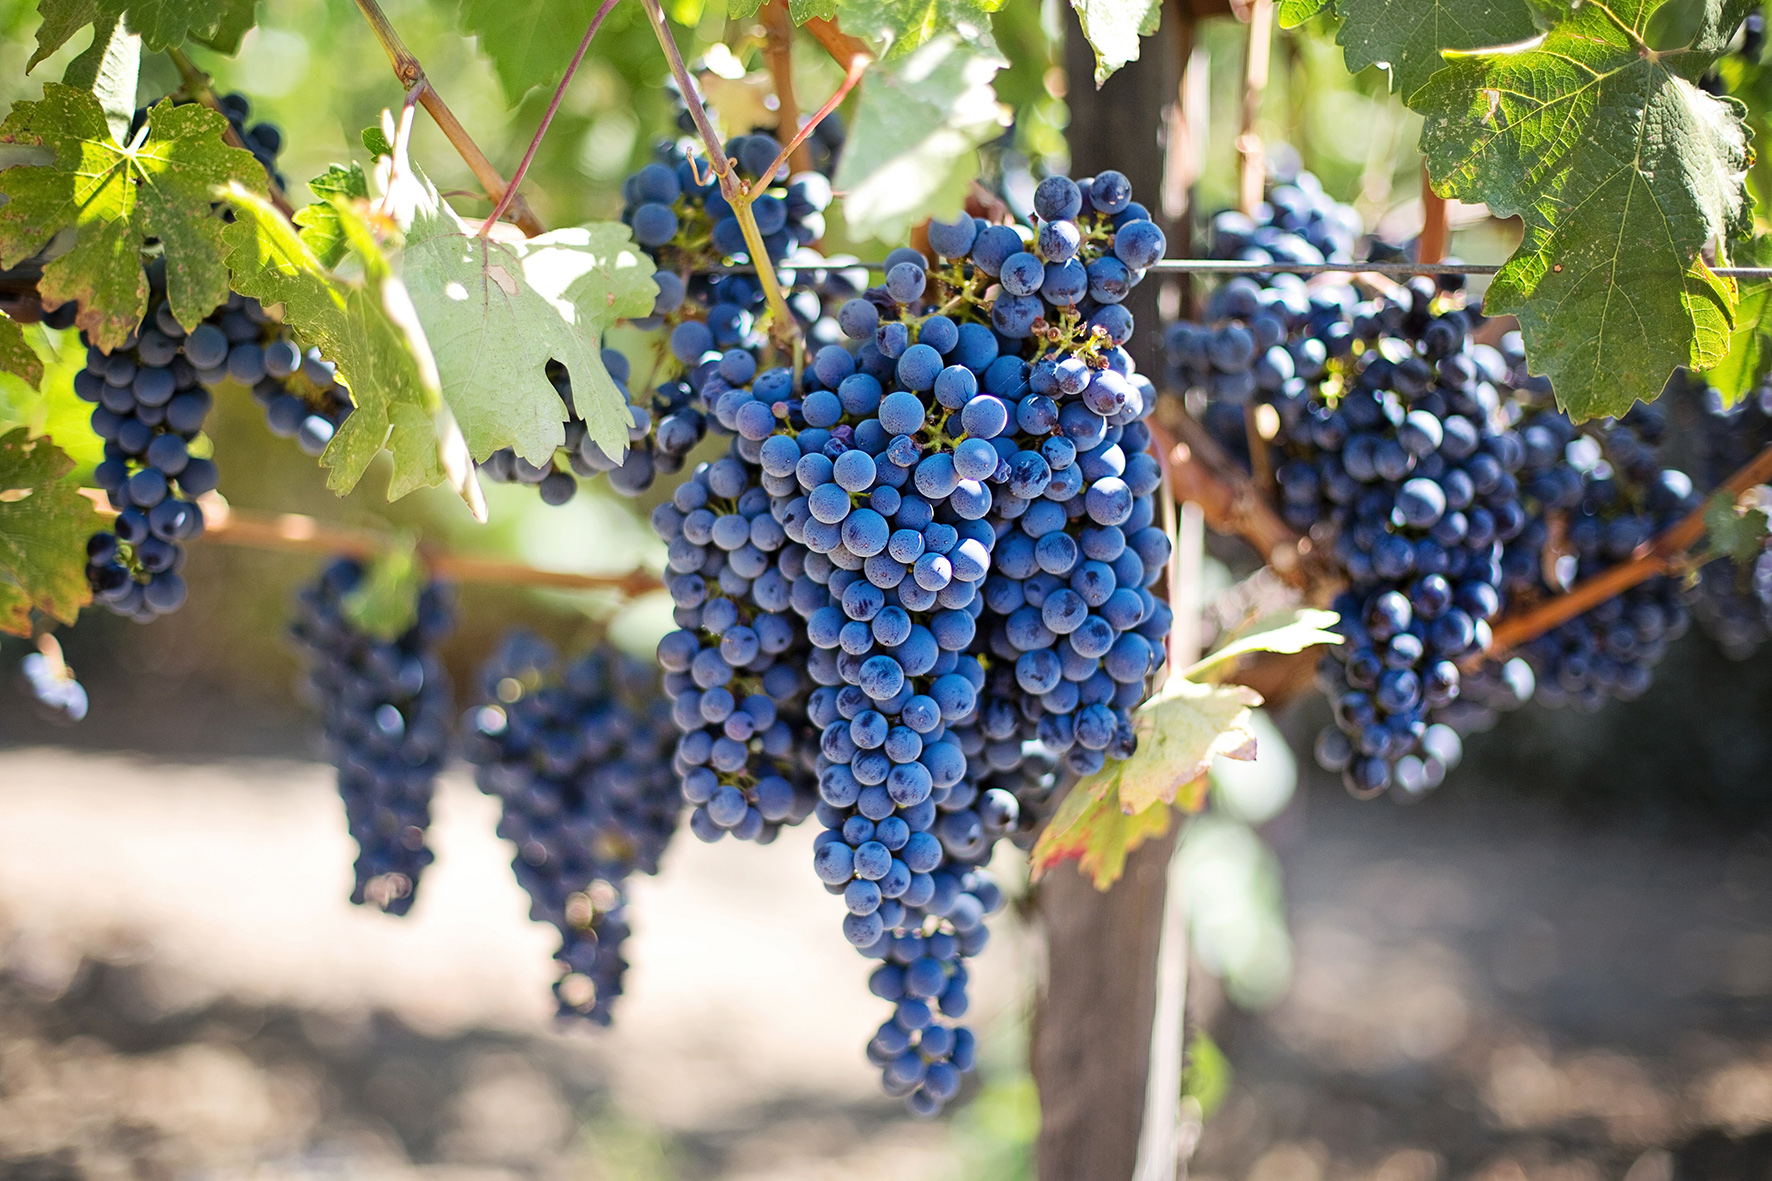 Tast al Museu de la Vinya i el Vi de Sant Fruitós